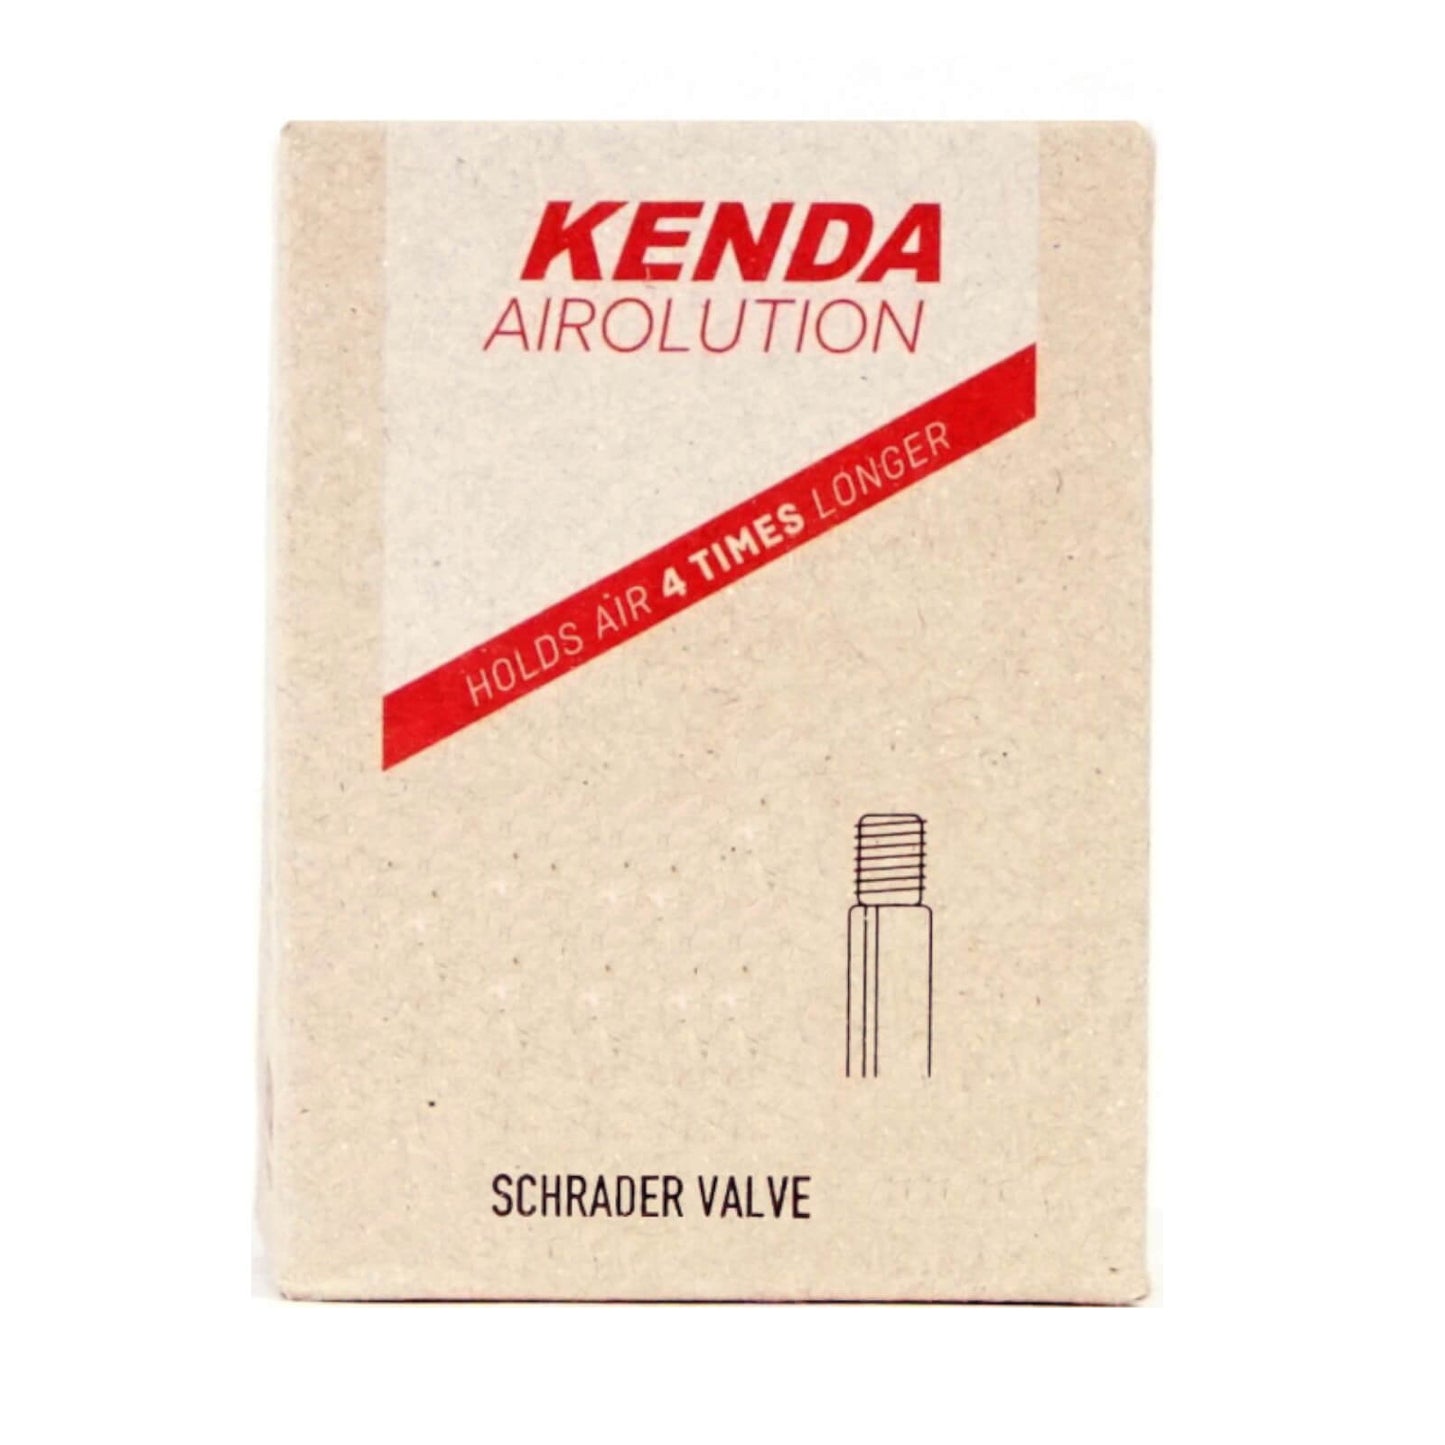 Kenda Airolution 700x30-43c 700c Schrader Valve Bike Inner Tube Single Tube